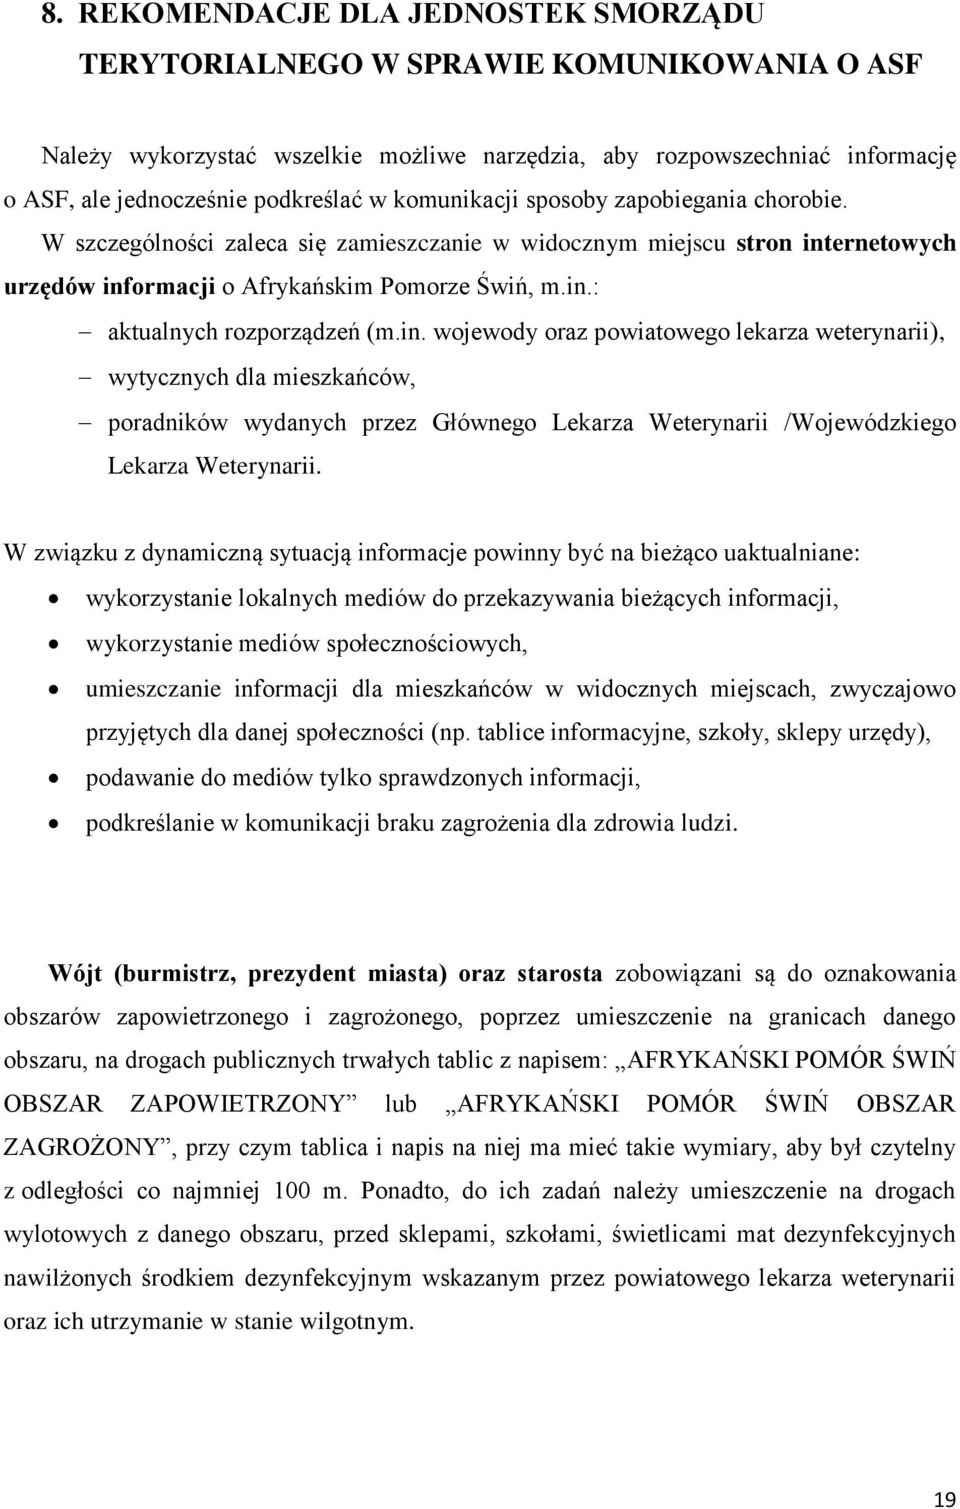 in. wojewody oraz powiatowego lekarza weterynarii), wytycznych dla mieszkańców, poradników wydanych przez Głównego Lekarza Weterynarii /Wojewódzkiego Lekarza Weterynarii.